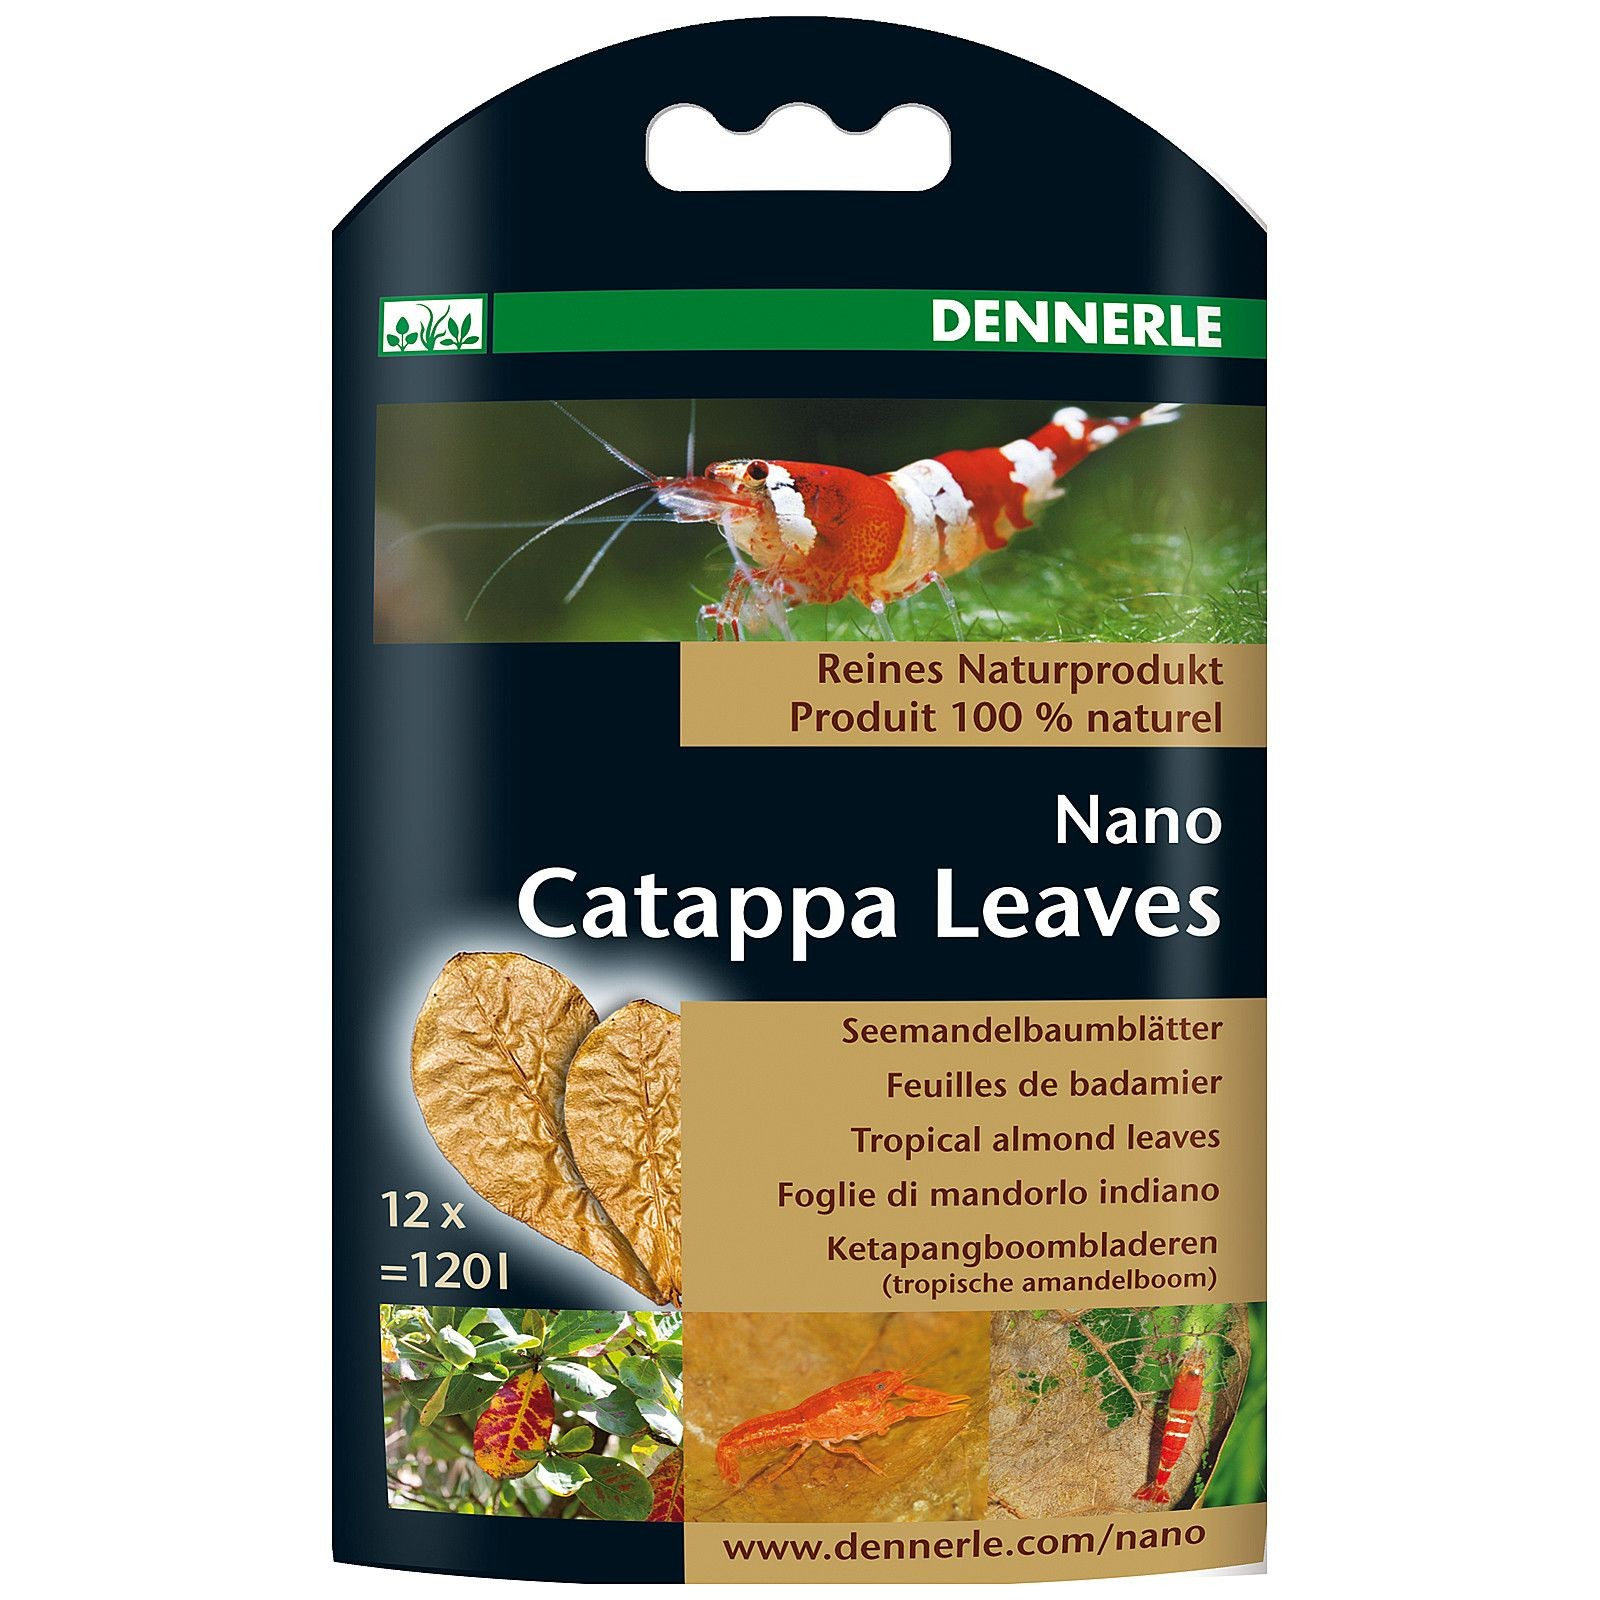 DENNERLE Nano Catappa Leaves tratamiento natural del agua